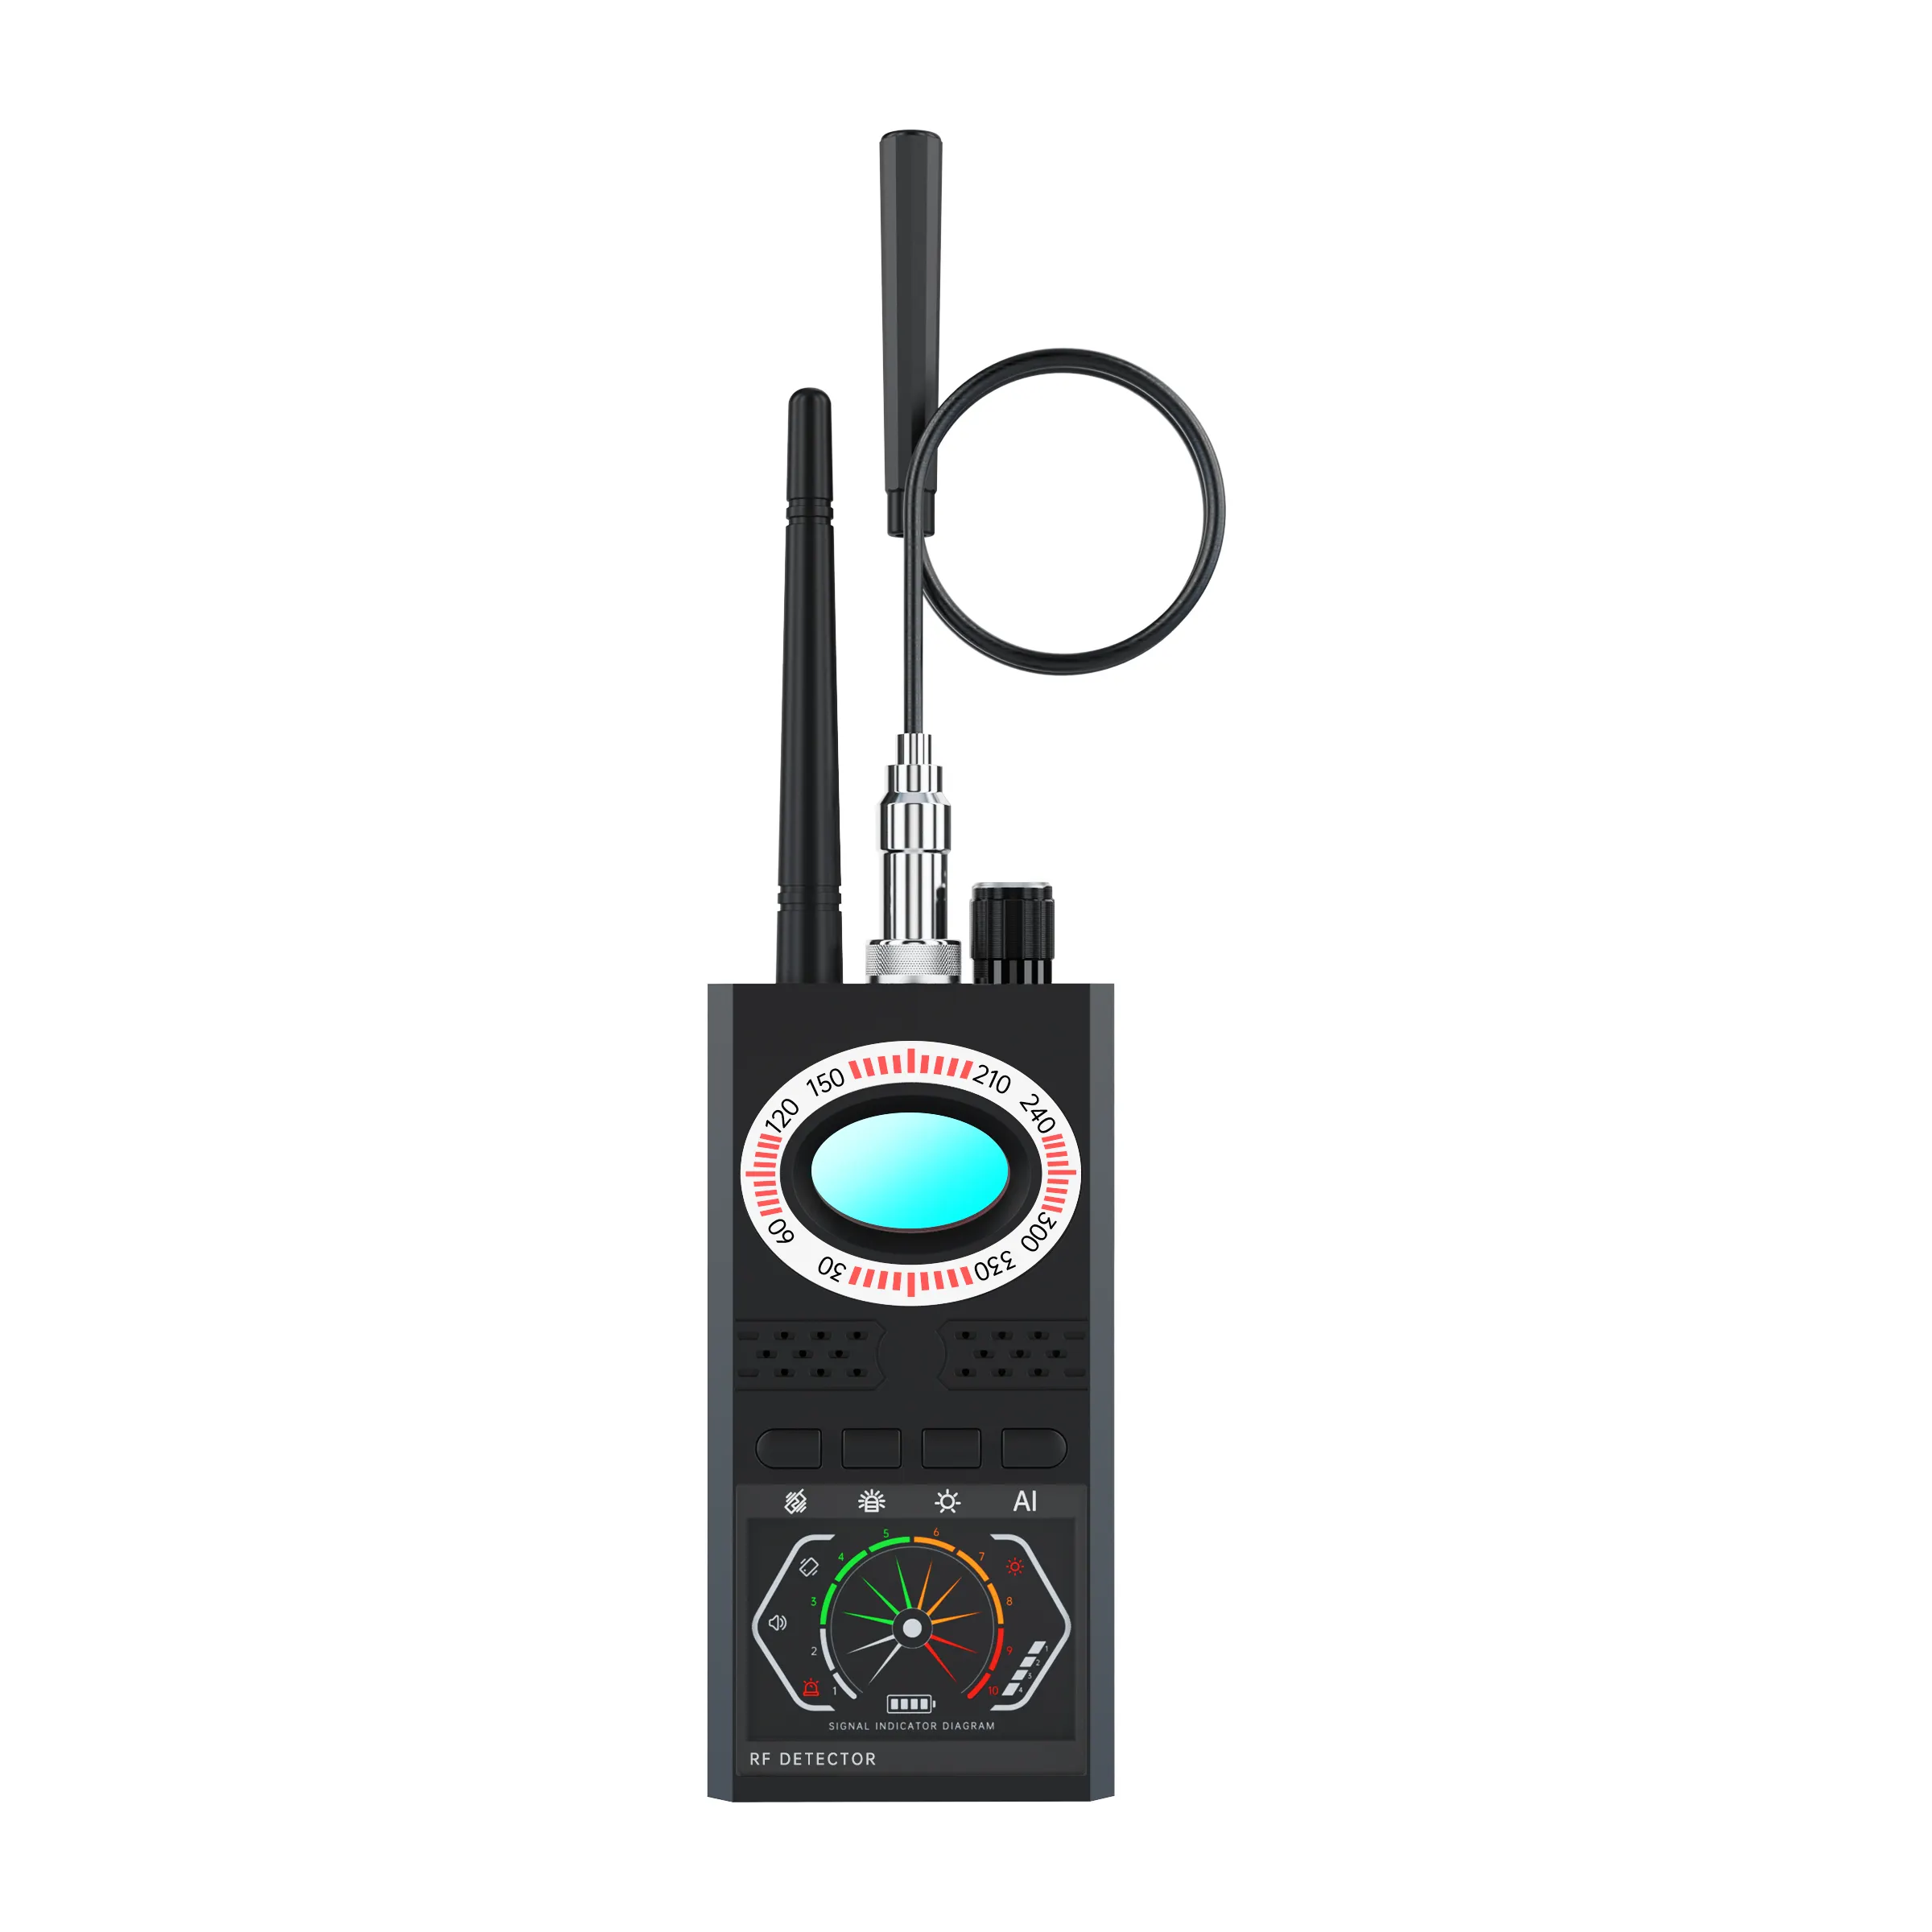 Nova atualização do sinal sem fio K68S Detector RF Bug Finder Anti Candid Camera GPS Tracker Pinhole câmera de velocidade escondida detector